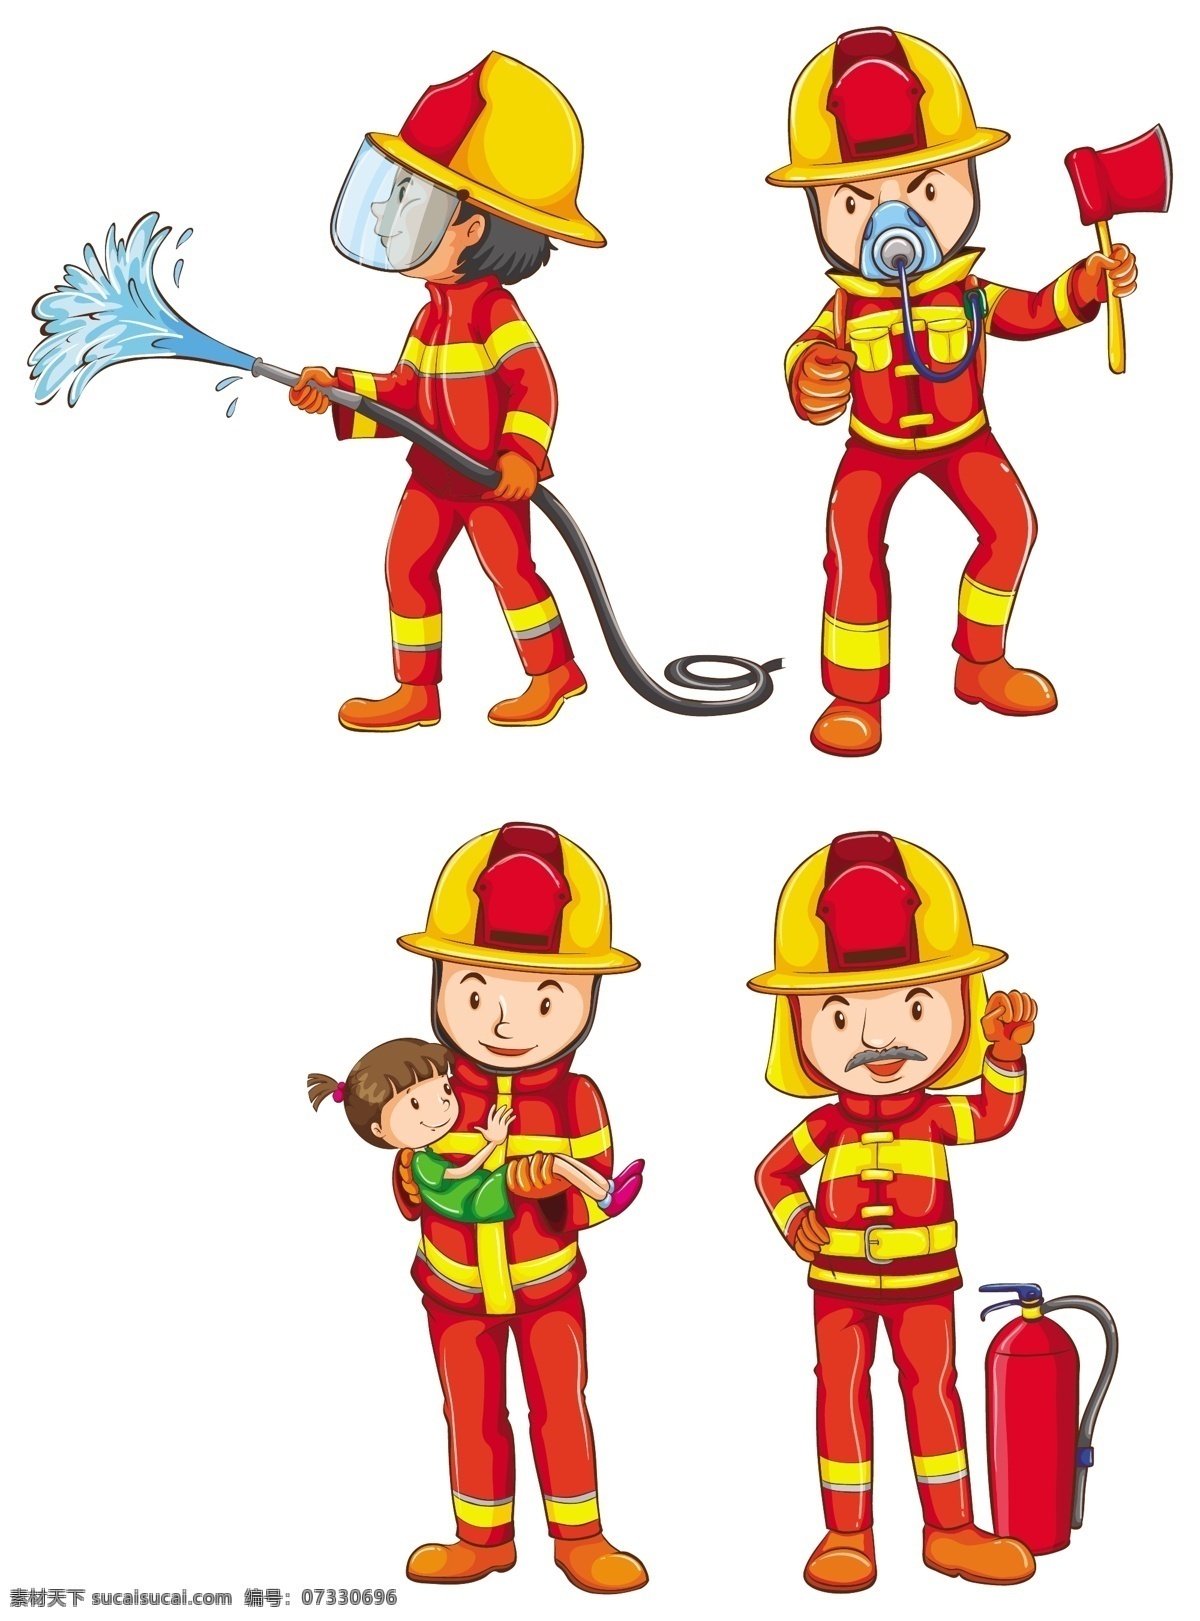 消防队员 背景 人物 水 人 卡通 工作 白色背景 图形 绘画 白色 安全 团体 头盔 职业 制服 卡通人物 紧急情况